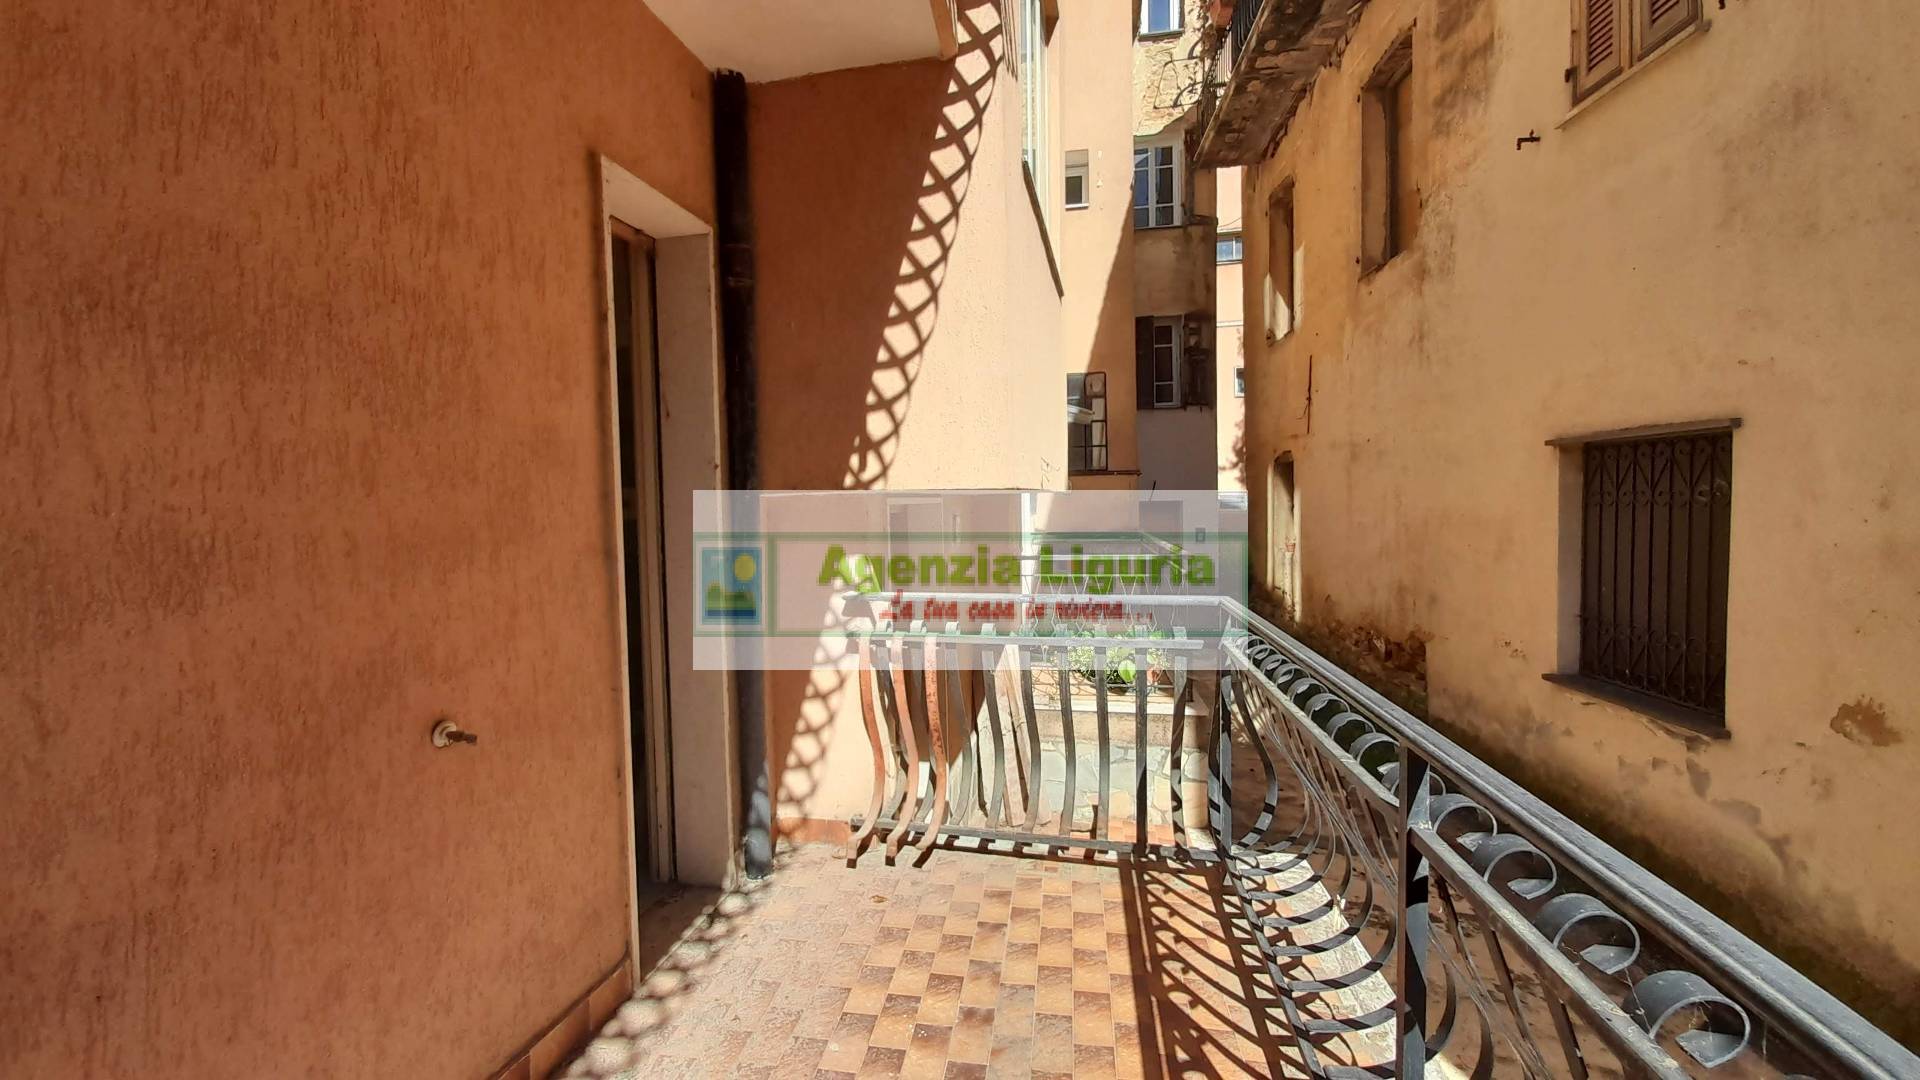 Appartamento in vendita a Perinaldo, 3 locali, prezzo € 45.000 | PortaleAgenzieImmobiliari.it